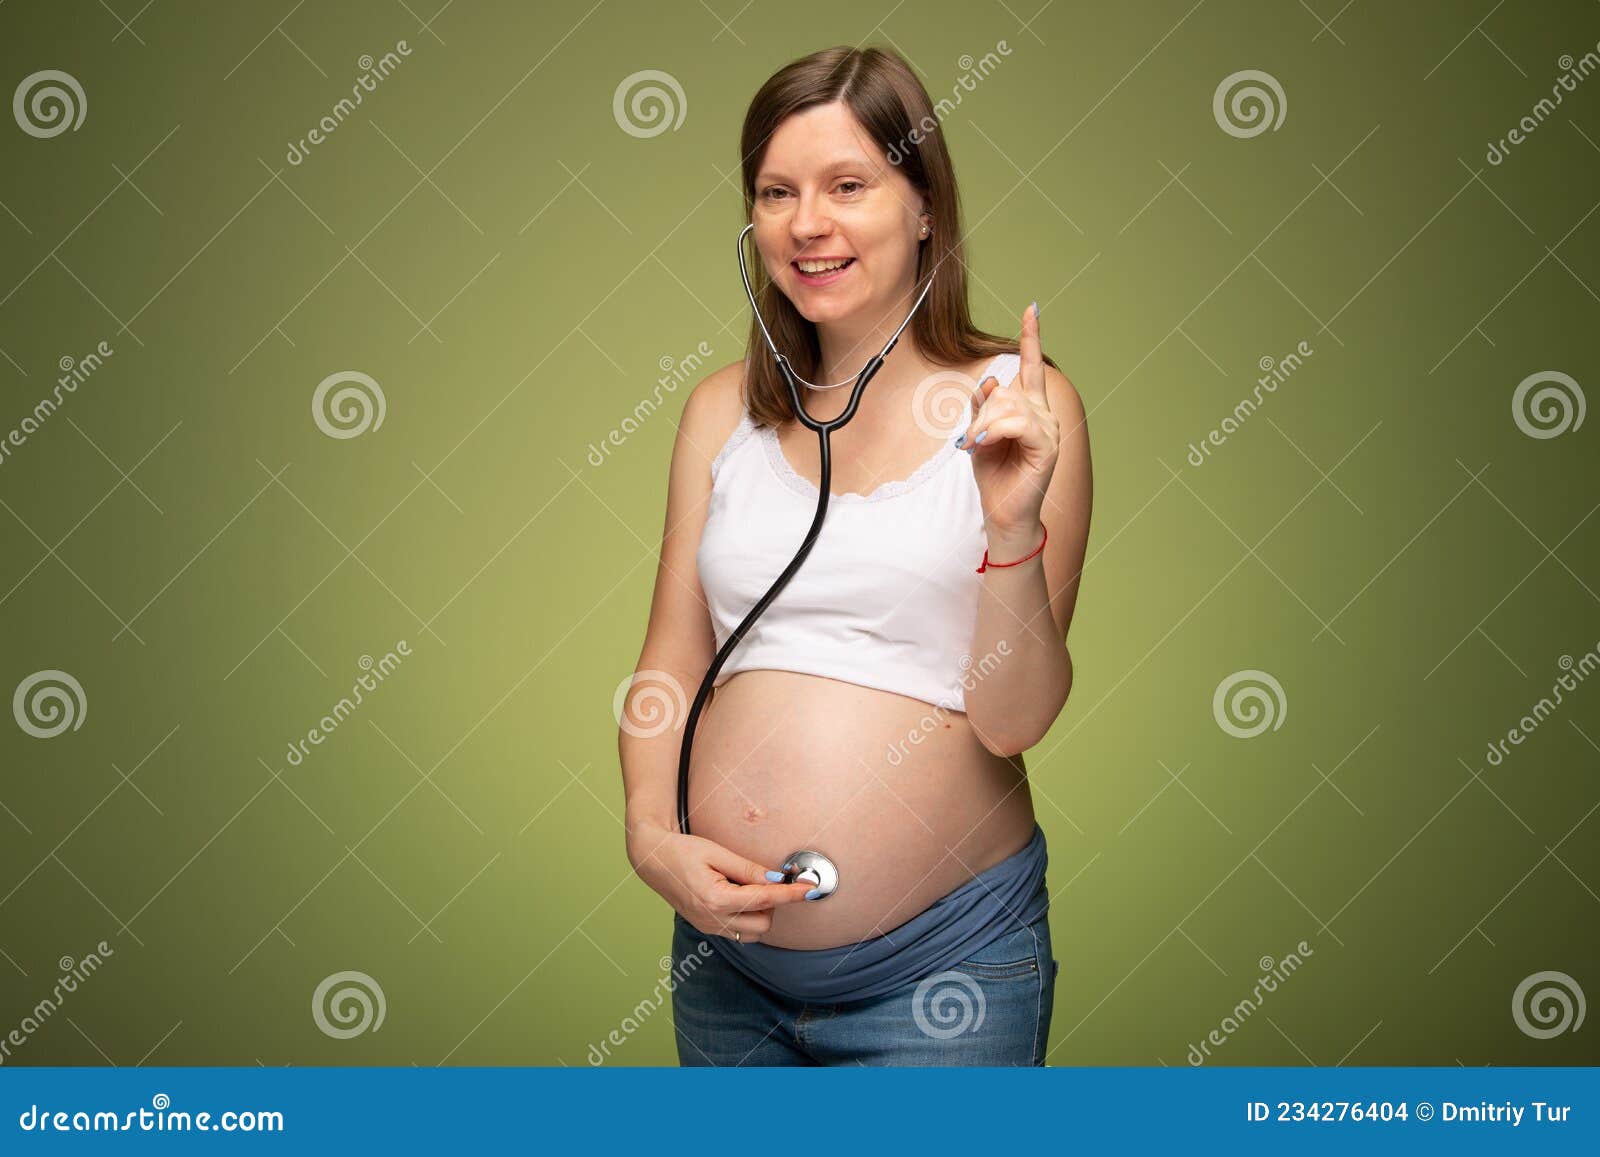 https://thumbs.dreamstime.com/z/femme-enceinte-st%C3%A9thoscope-essayant-d-entendre-son-b%C3%A9b%C3%A9-battement-de-coeur-par-elle-m%C3%AAme-inqui%C3%A9tant-pendant-la-grossesse-avec-234276404.jpg